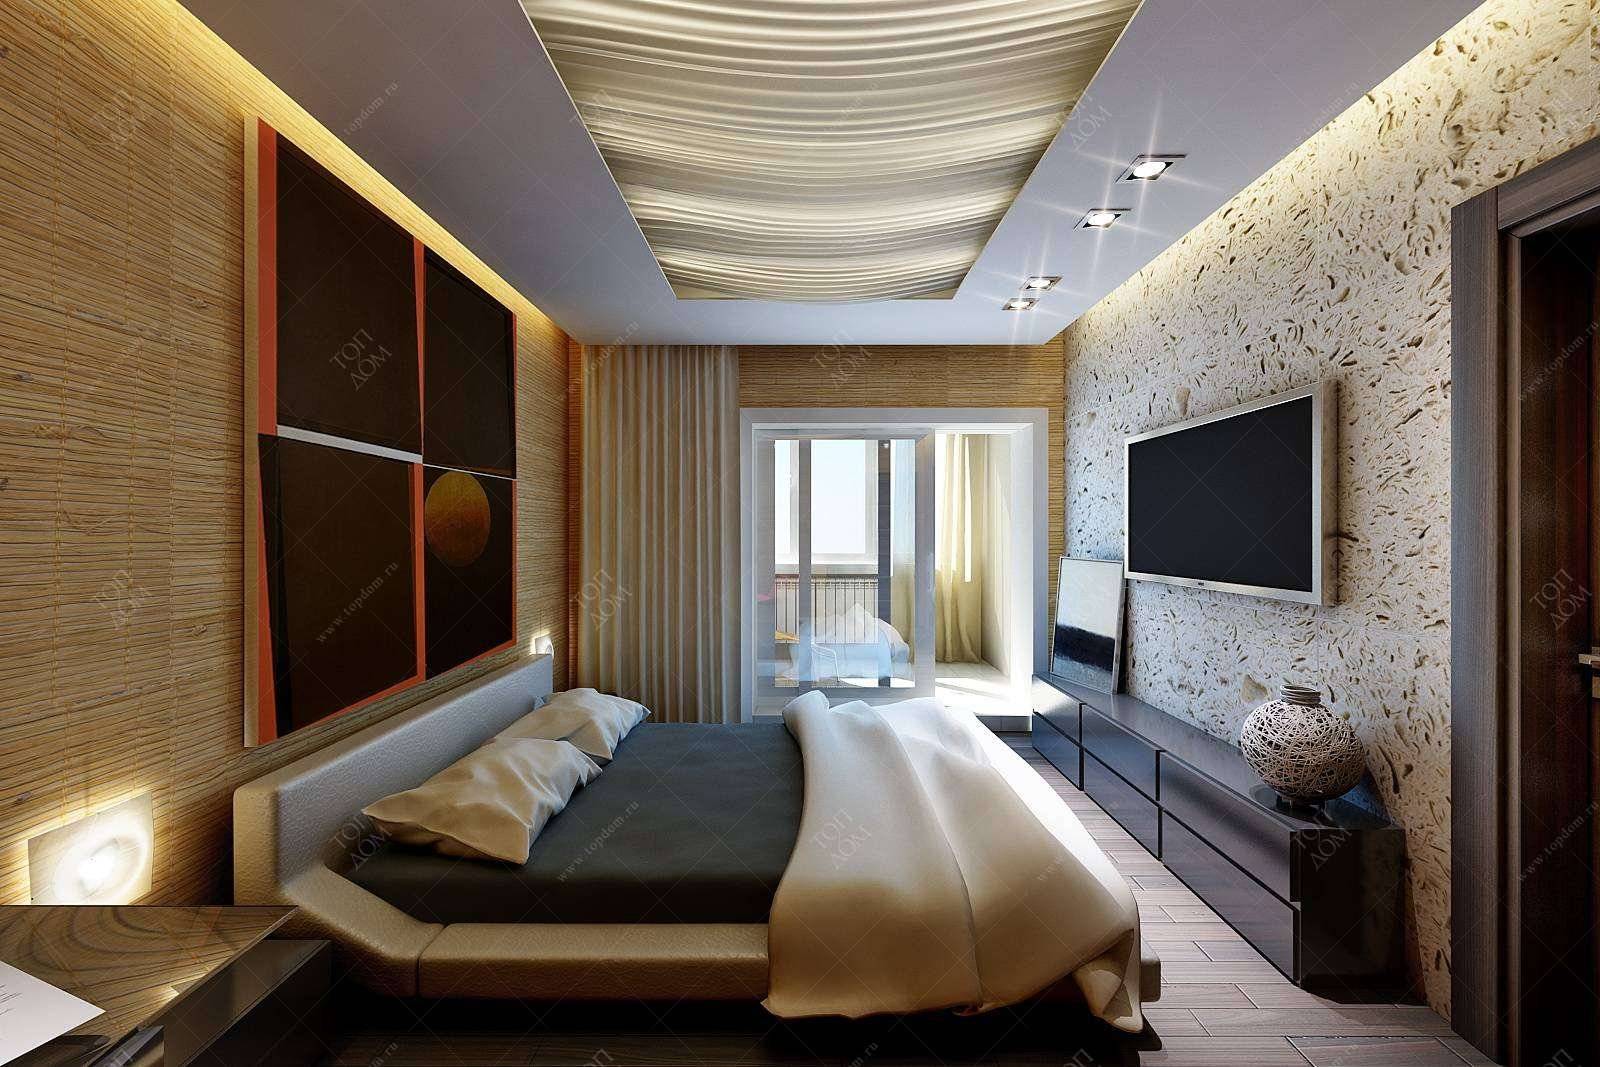 Узкая спальня: примеры красивого оформления и удачного дизайна интерьера (110 фото)варианты планировки и дизайна